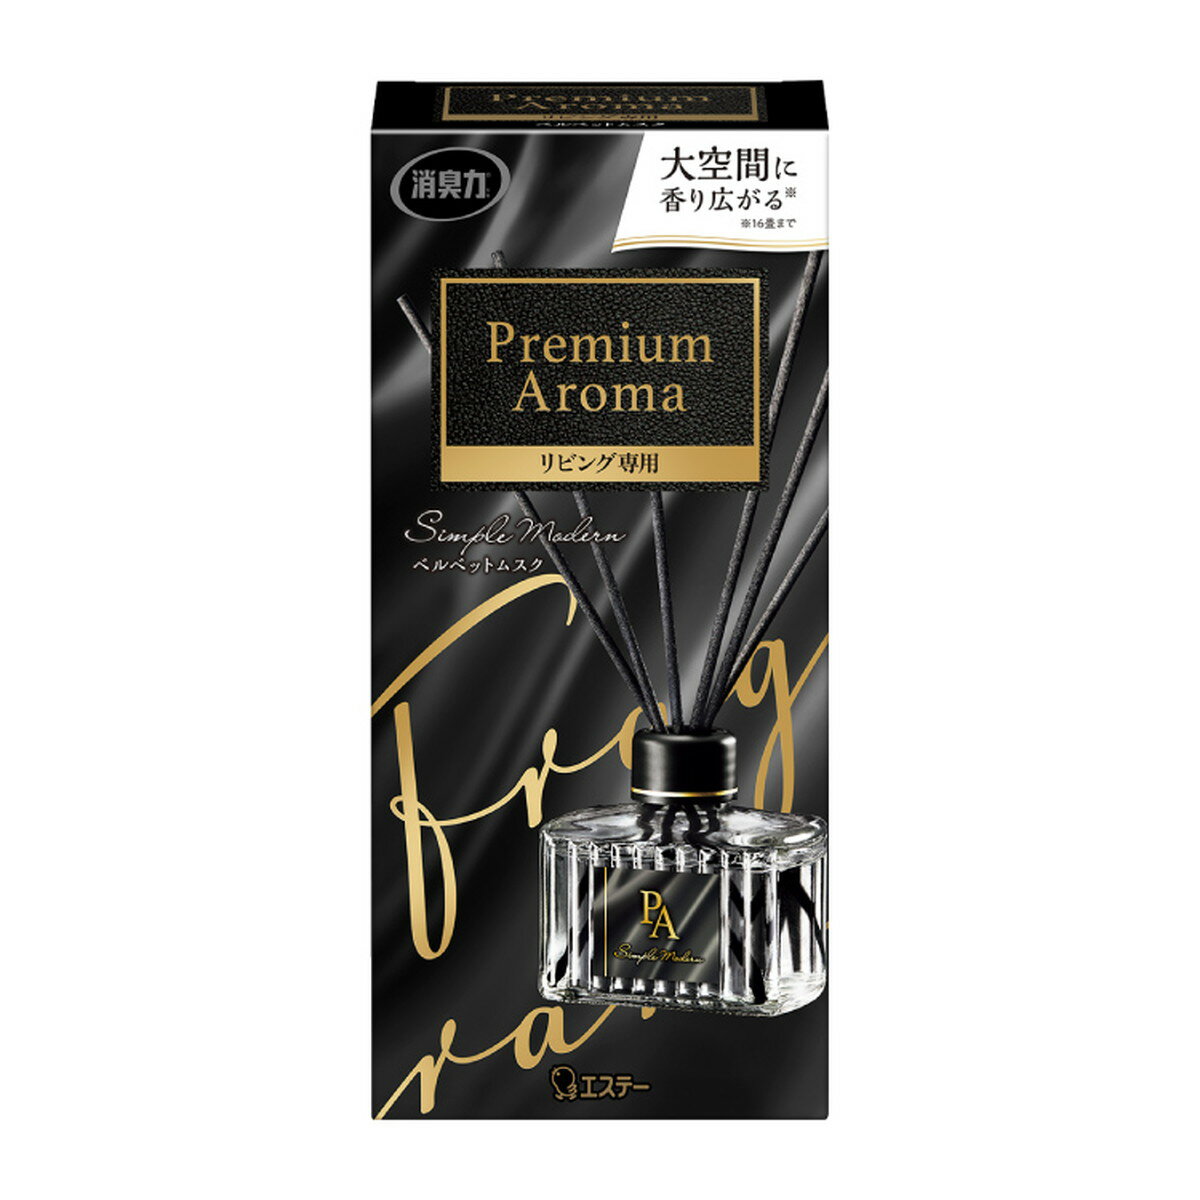 エステー お部屋の消臭力 Premium Aroma Stick プレミアムアロマ スティック リビング専用 本体 ベルベットムスク 80ml 芳香剤 部屋用